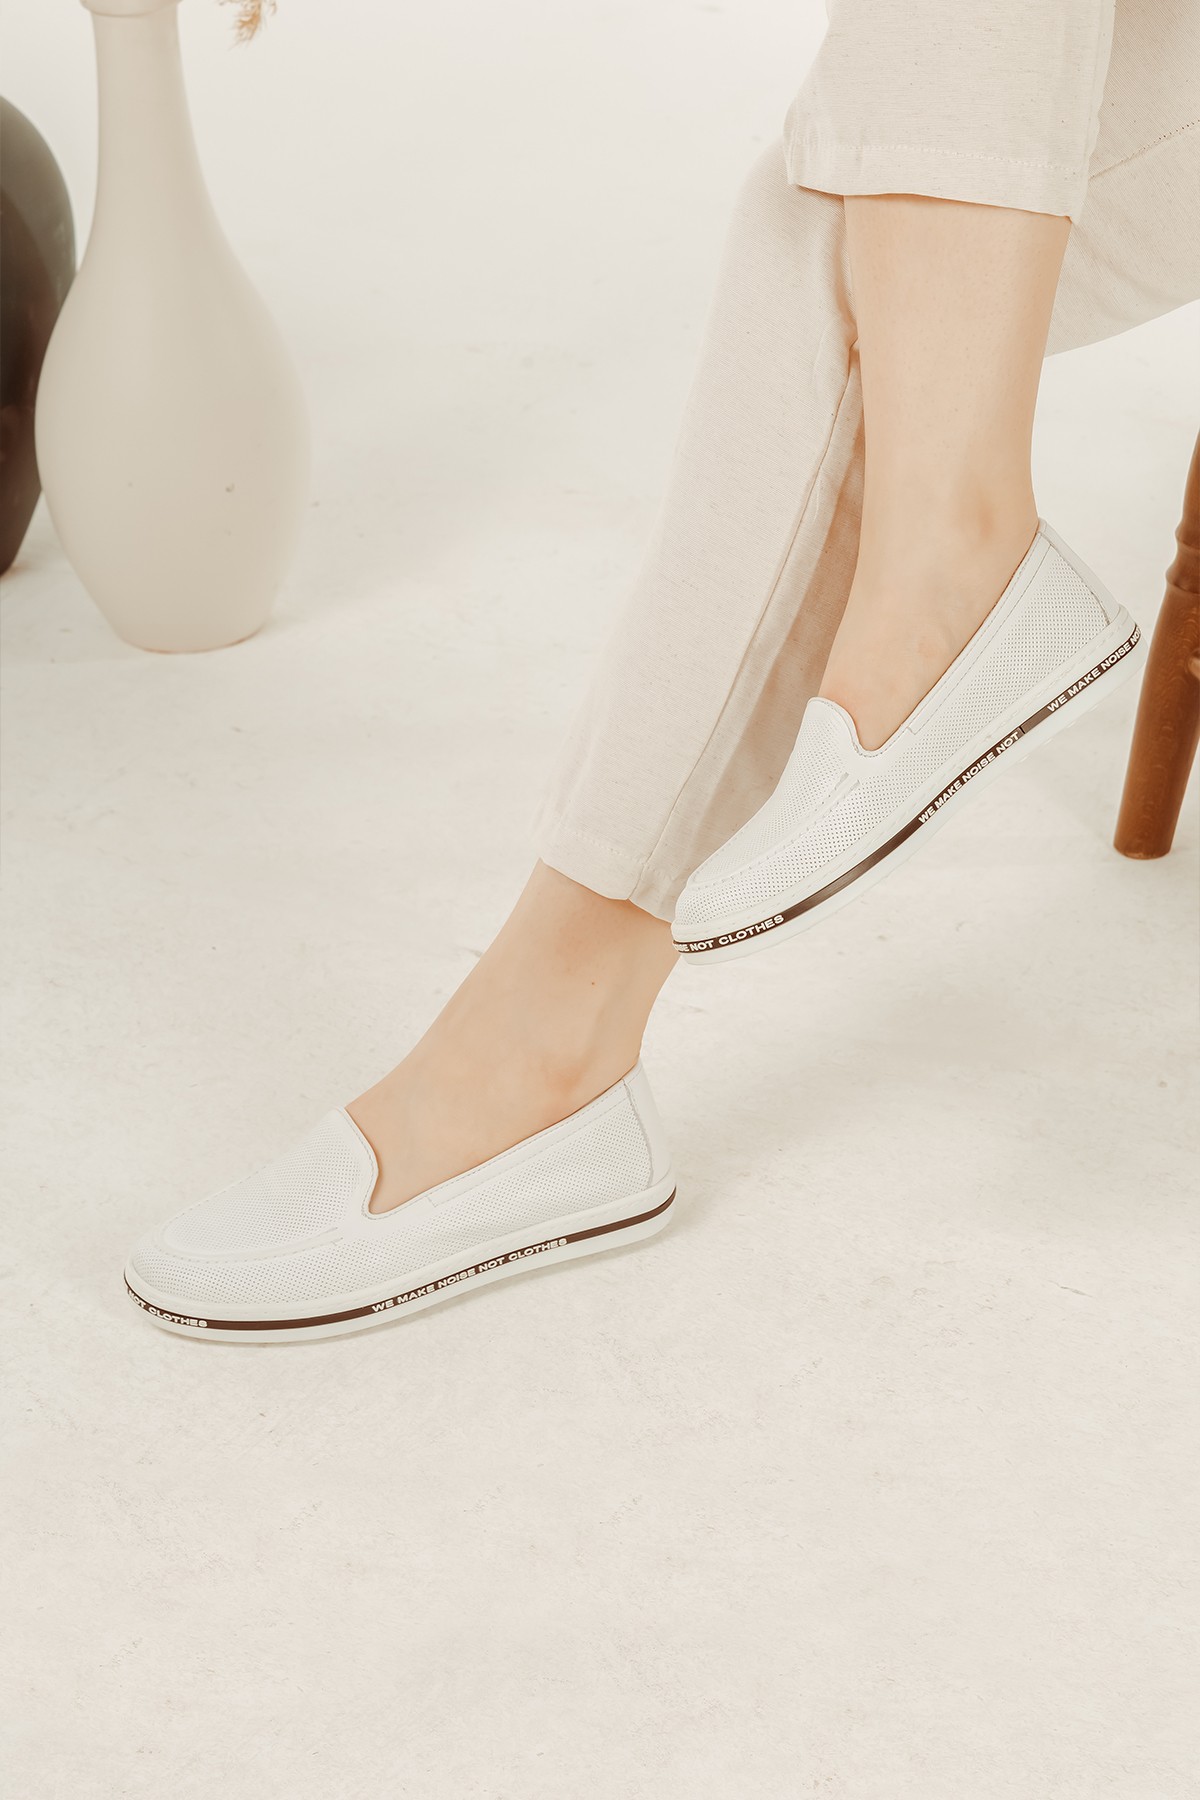 Cooliza Hakiki Deri Baskılı Tabanı Yazı Detaylı Rahat Günlük Kadın Babet Ayakkabı - Beyaz